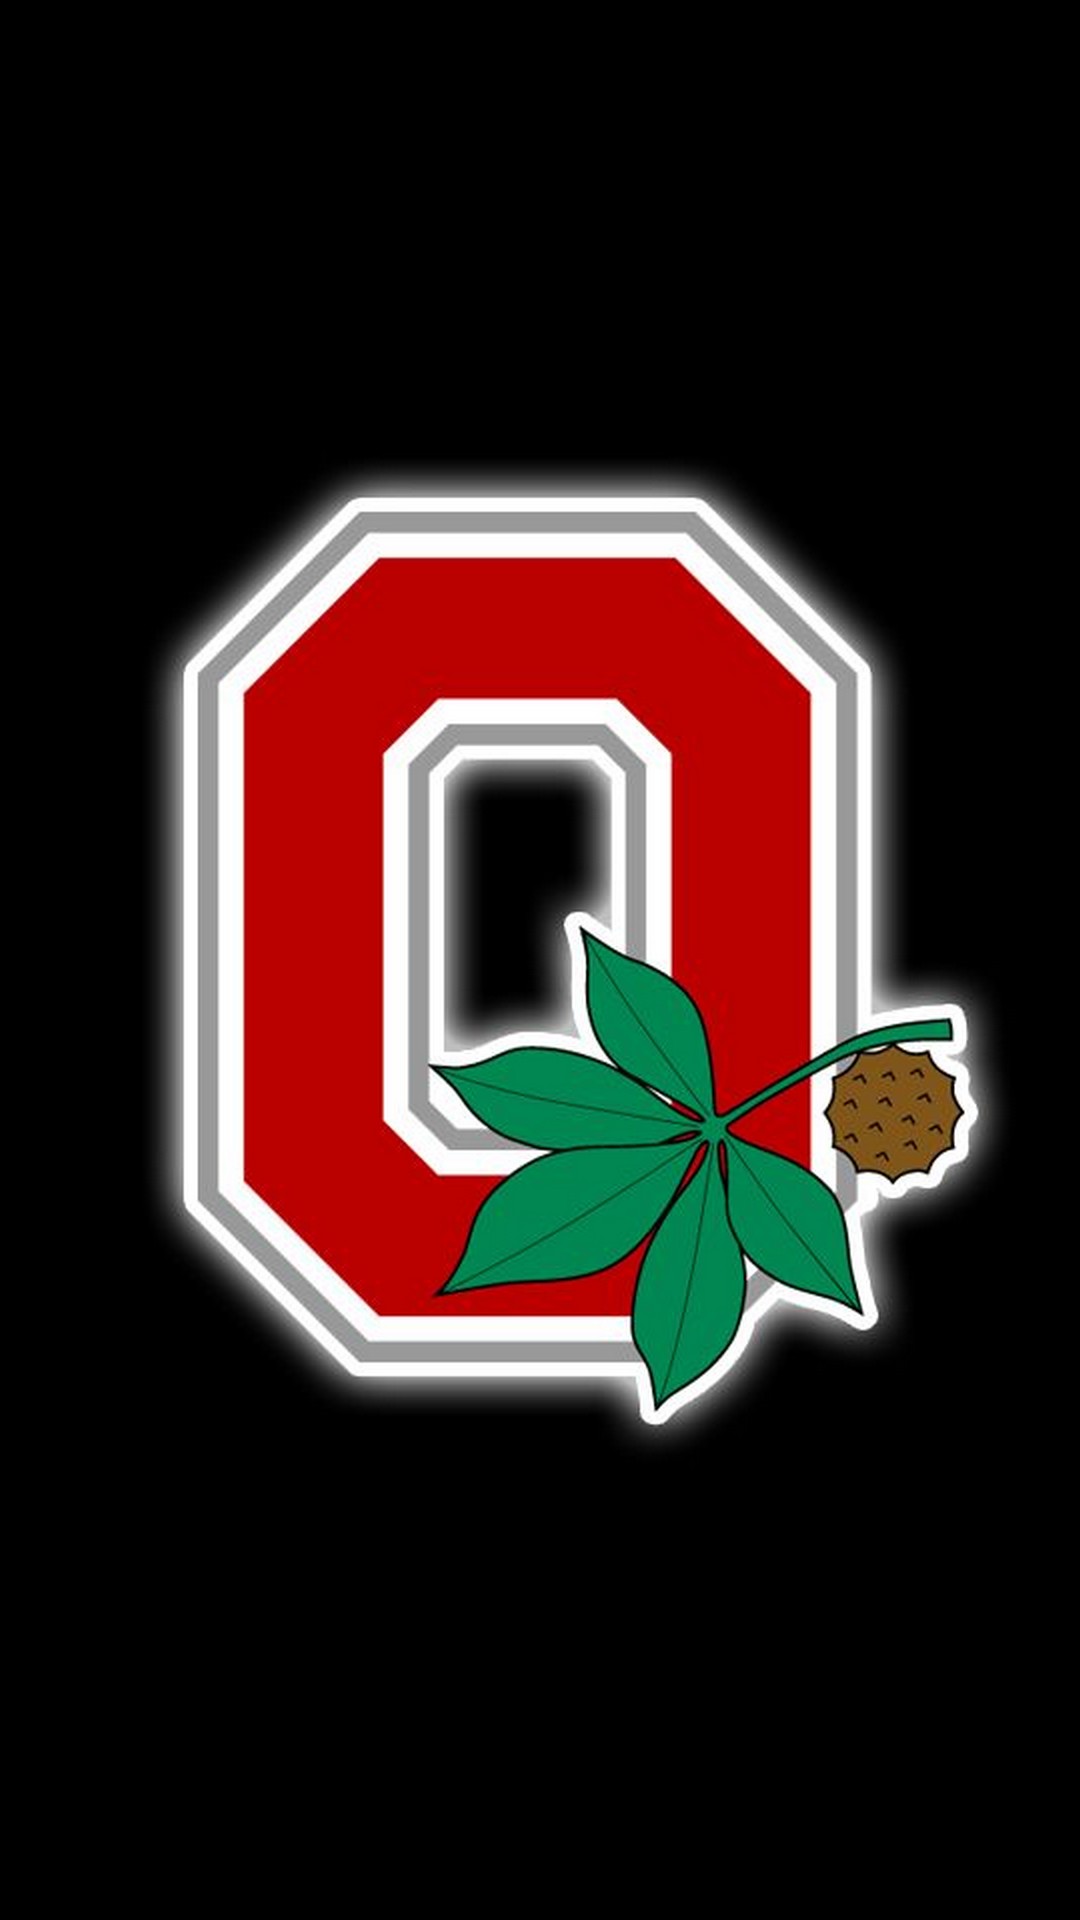 sfondi per iphone ohio state,verde,foglia,rosso,illustrazione,emblema